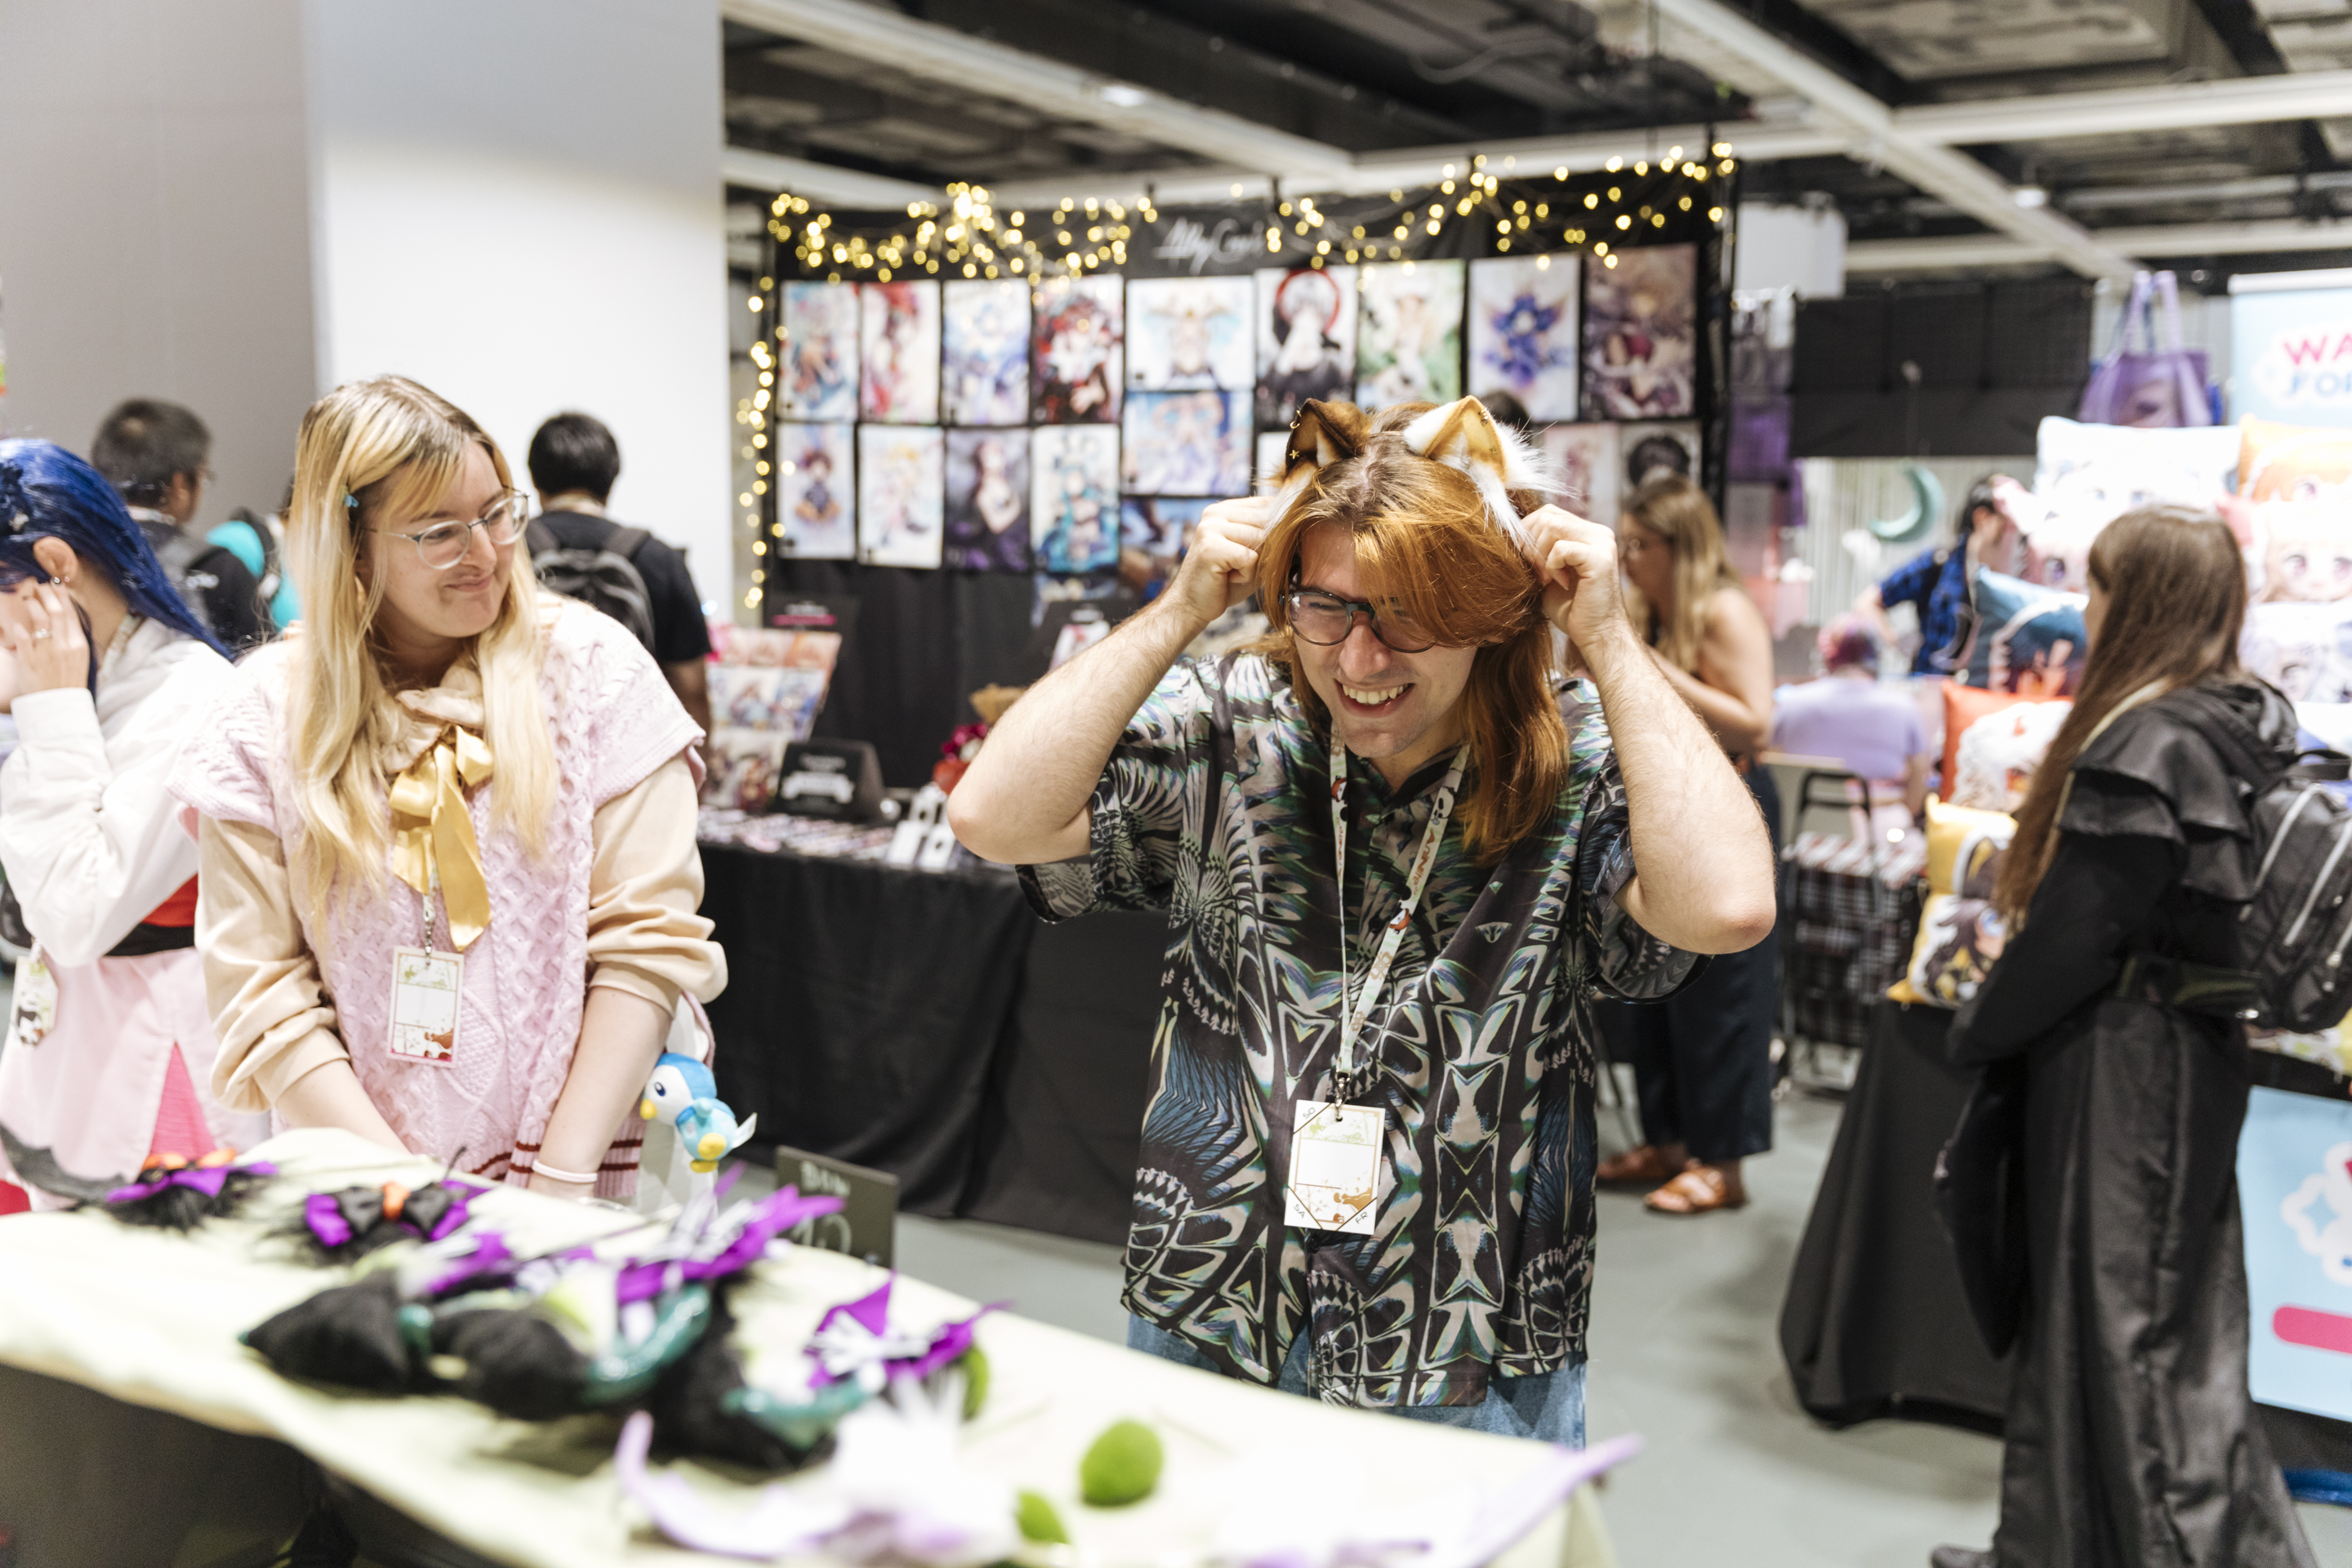 Foto: eine Frau und ein Mann probieren Haarreifen an einem Manga-Stand